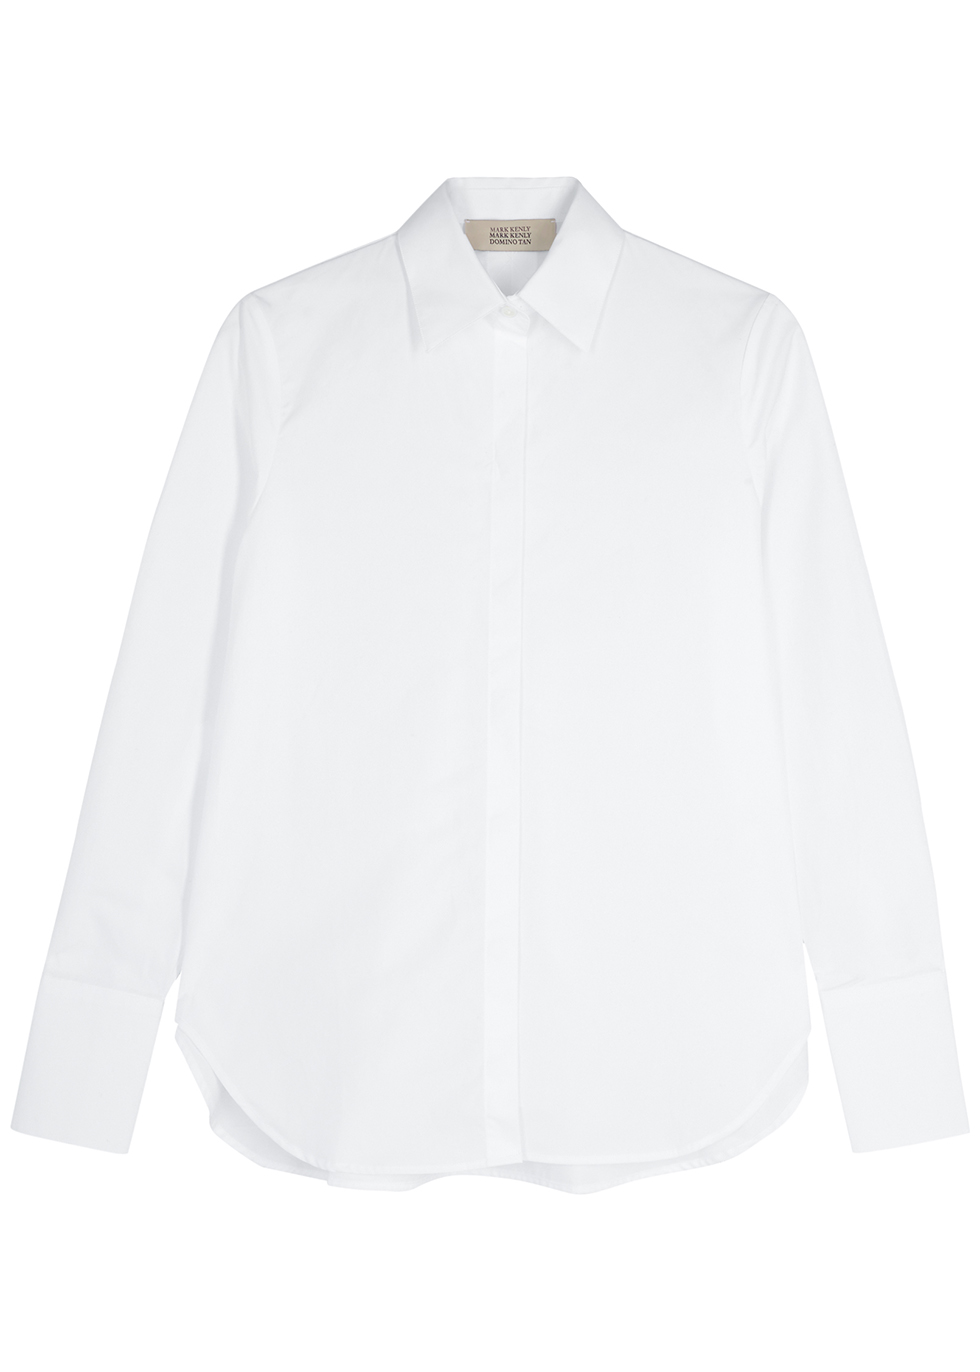 Bertine white poplin shirt